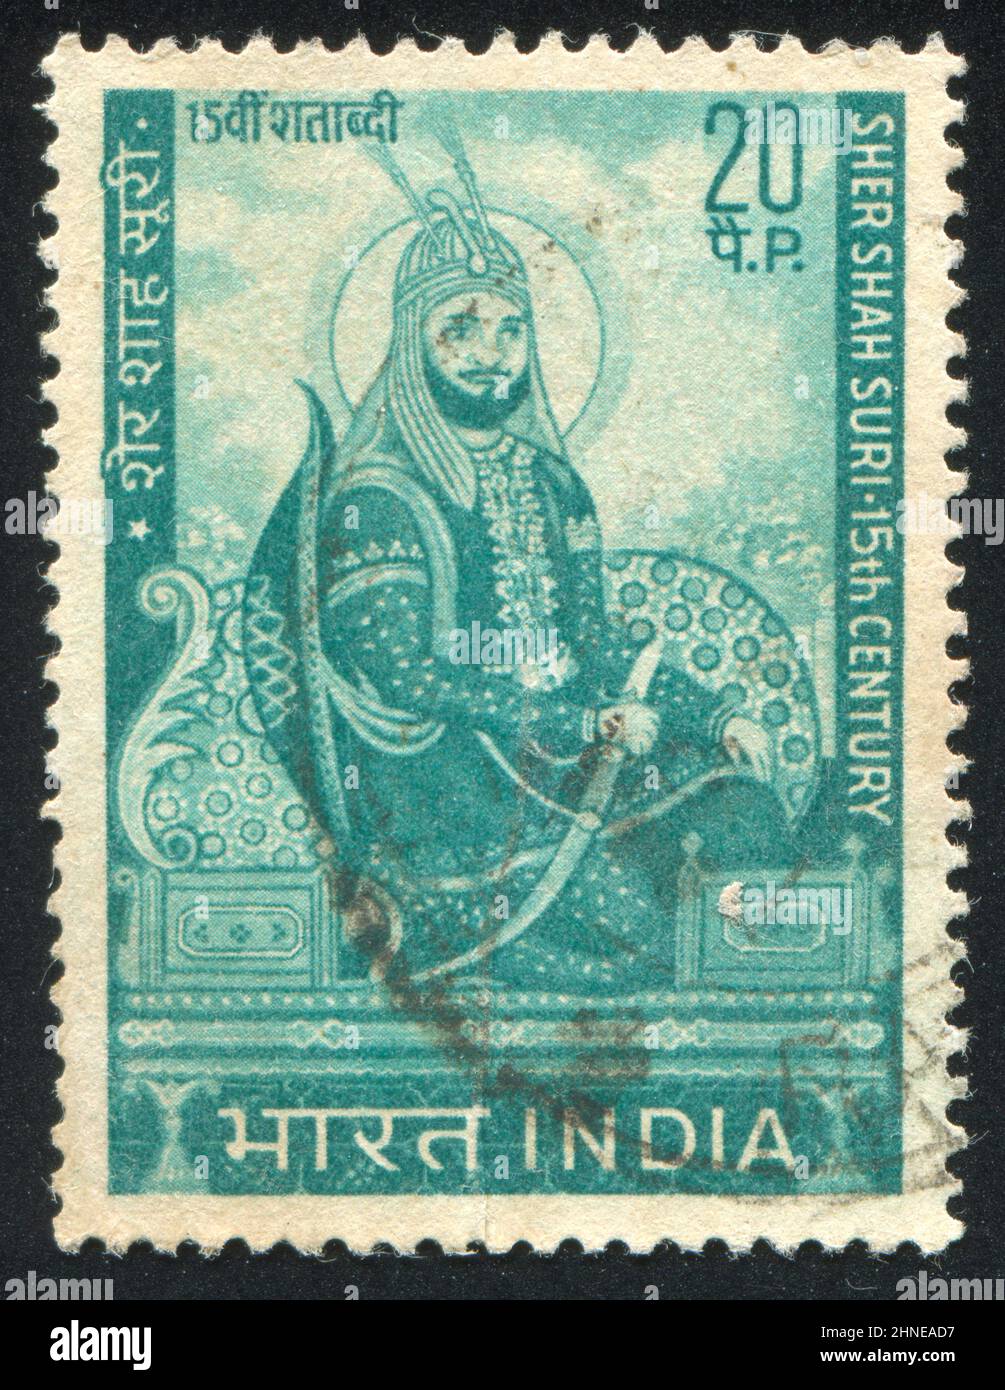 INDIEN - UM 1970: Briefmarke gedruckt von Indien, zeigt Sher Shah Suri, um 1970 Stockfoto